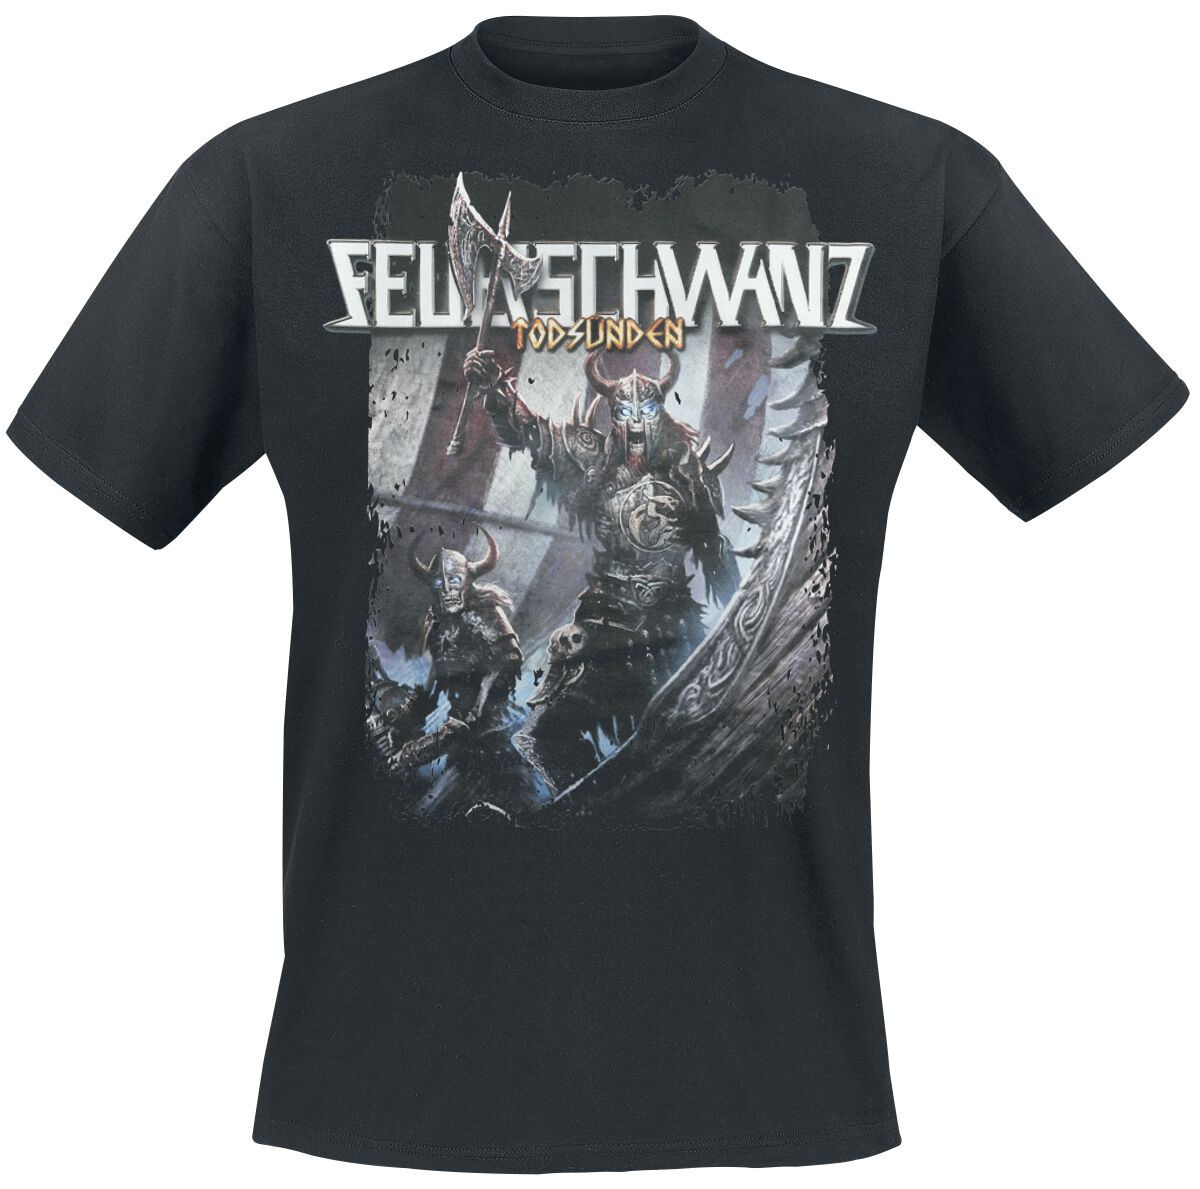 Feuerschwanz T-Shirt - Todsünden Viking - S bis L - für Männer - Größe L - schwarz  - EMP exklusives Merchandise!